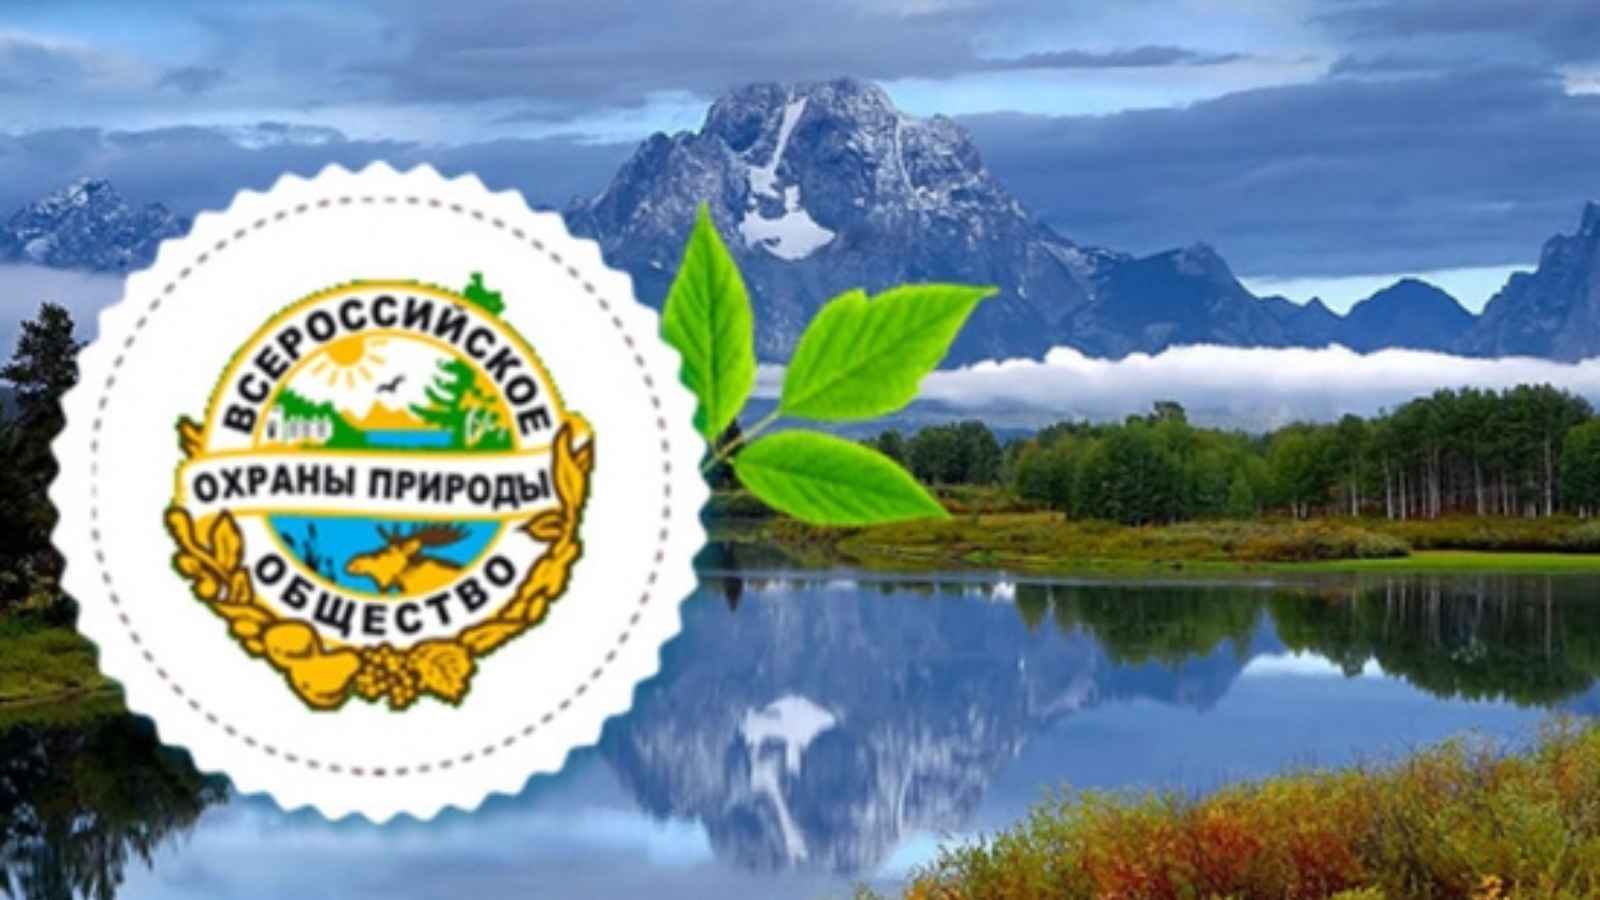 1. Всероссийское общество охраны природы (ВООП)